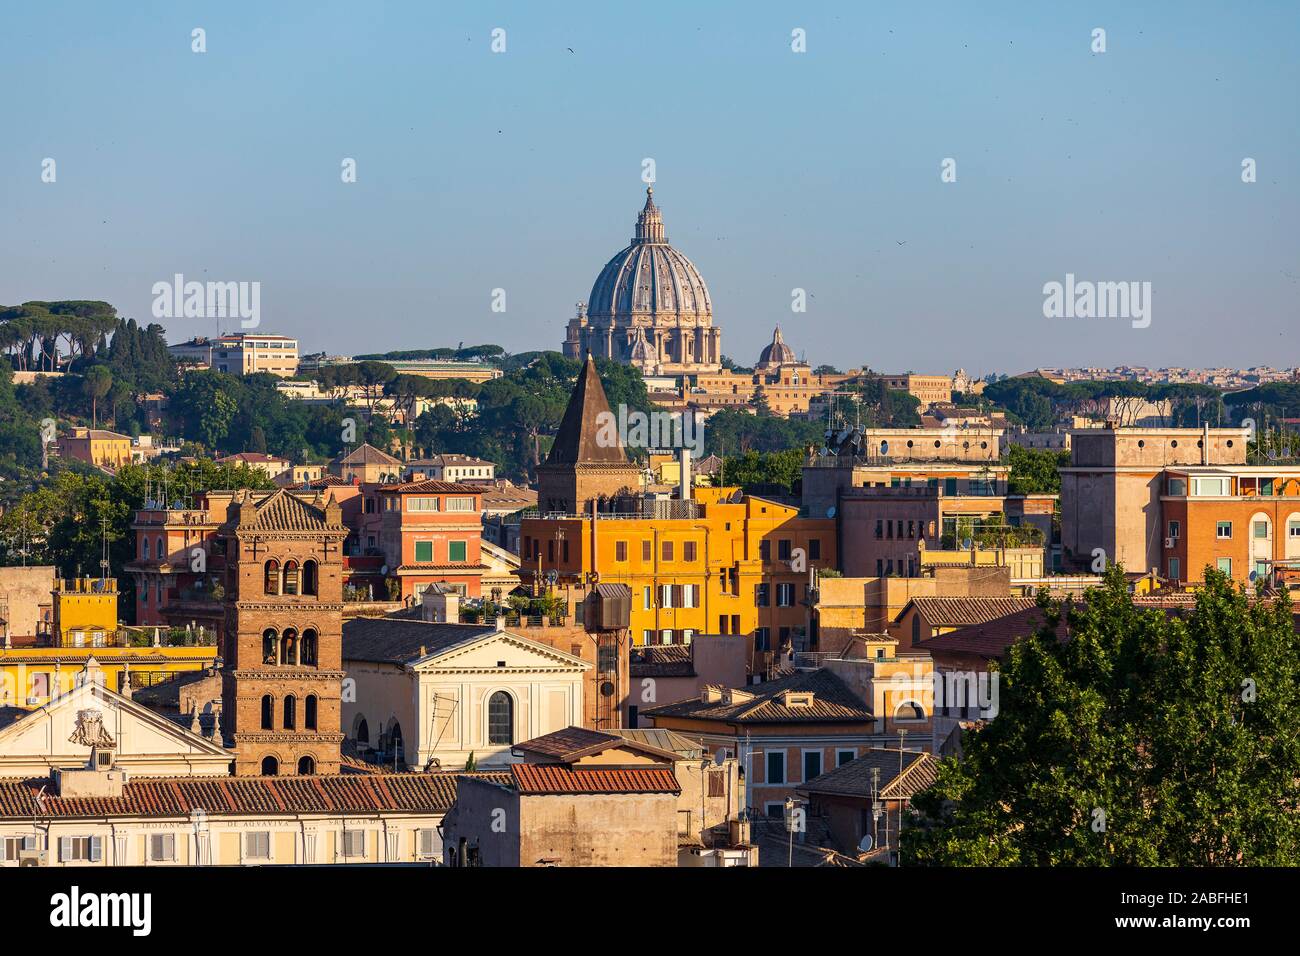 La Basilica di San Pietro la cupola e sui tetti di Roma, Italia Foto Stock